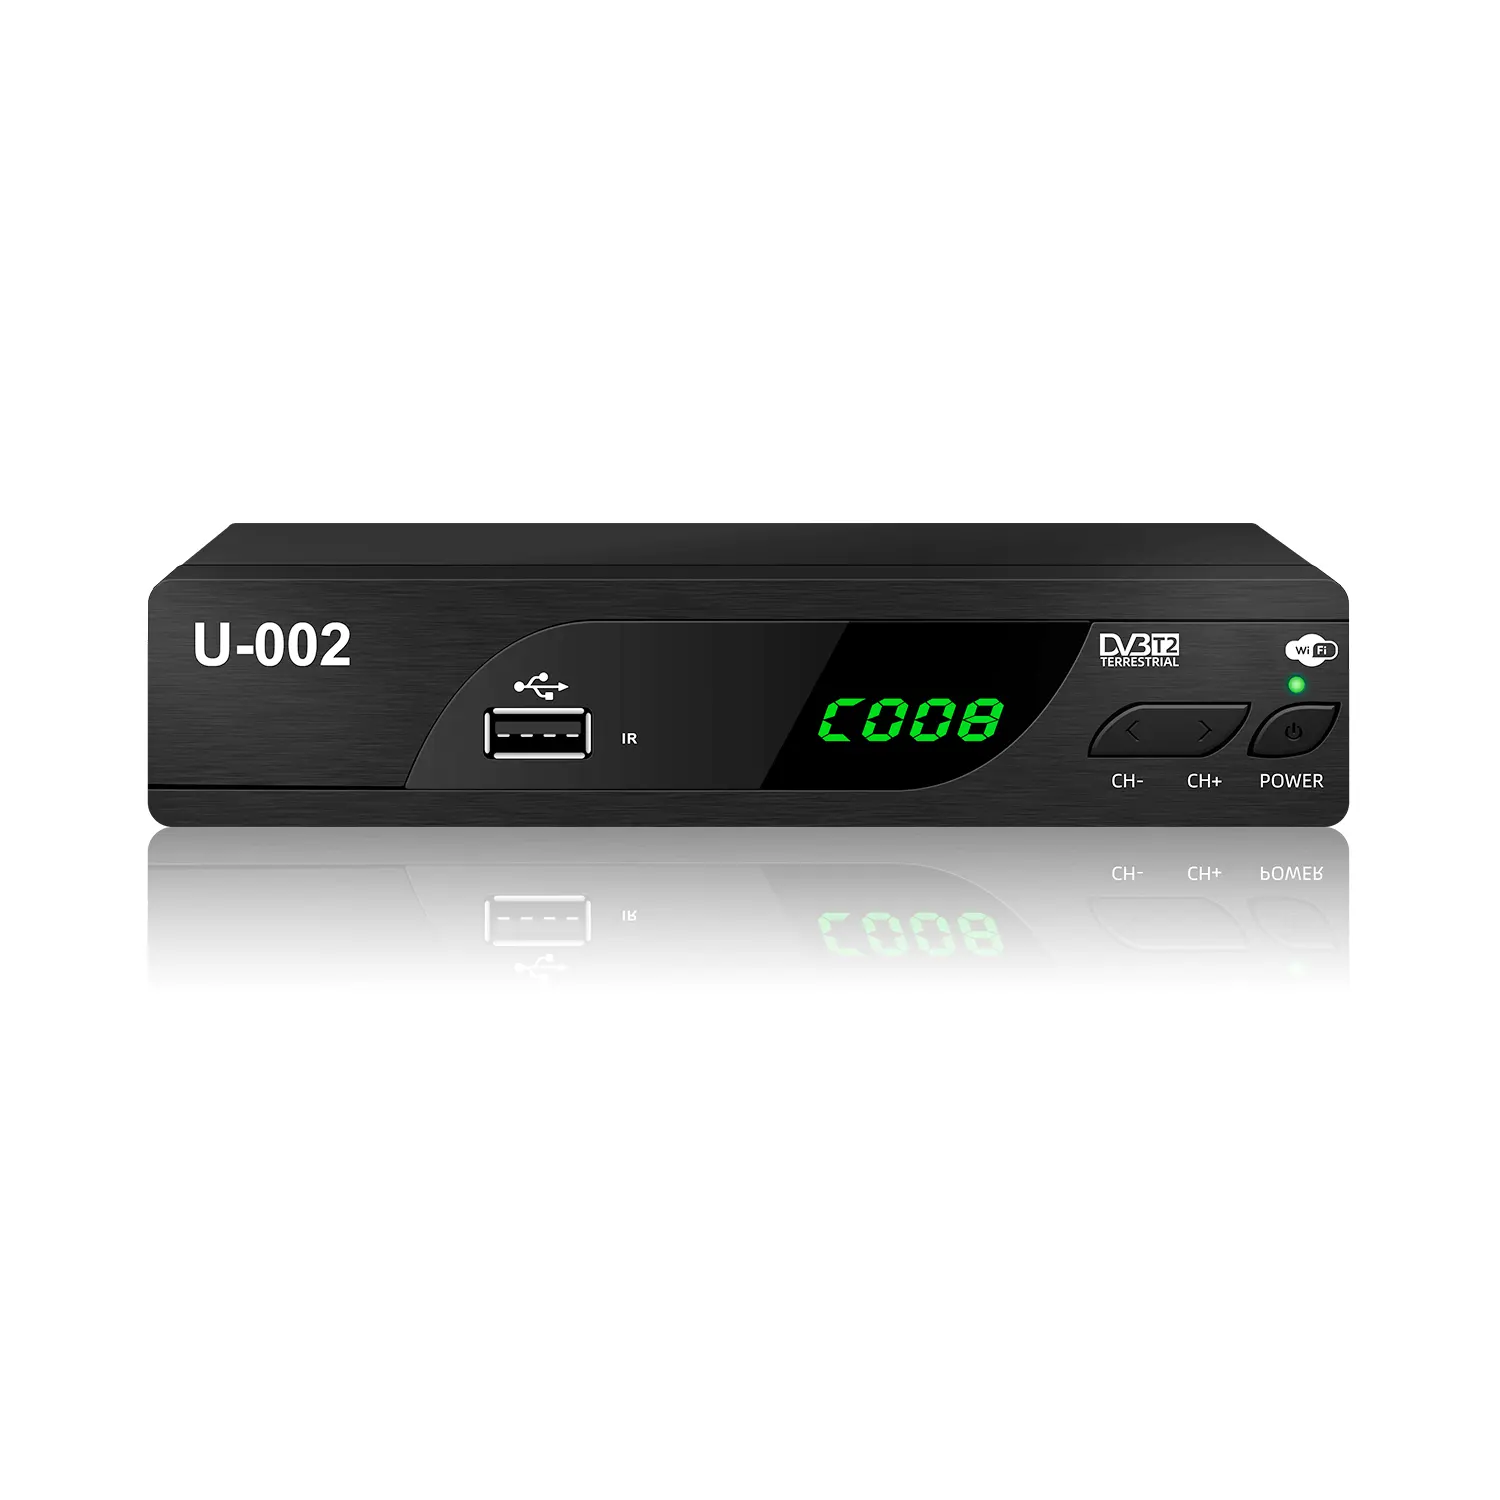 Junuo-Decodificador de Televisión Digital Terrestre Full HD 1080P DVB T2 receptor H.264 H.265, decodificador de televisión MPEG4 Full HD P, decodificador TDT Scart al por mayor